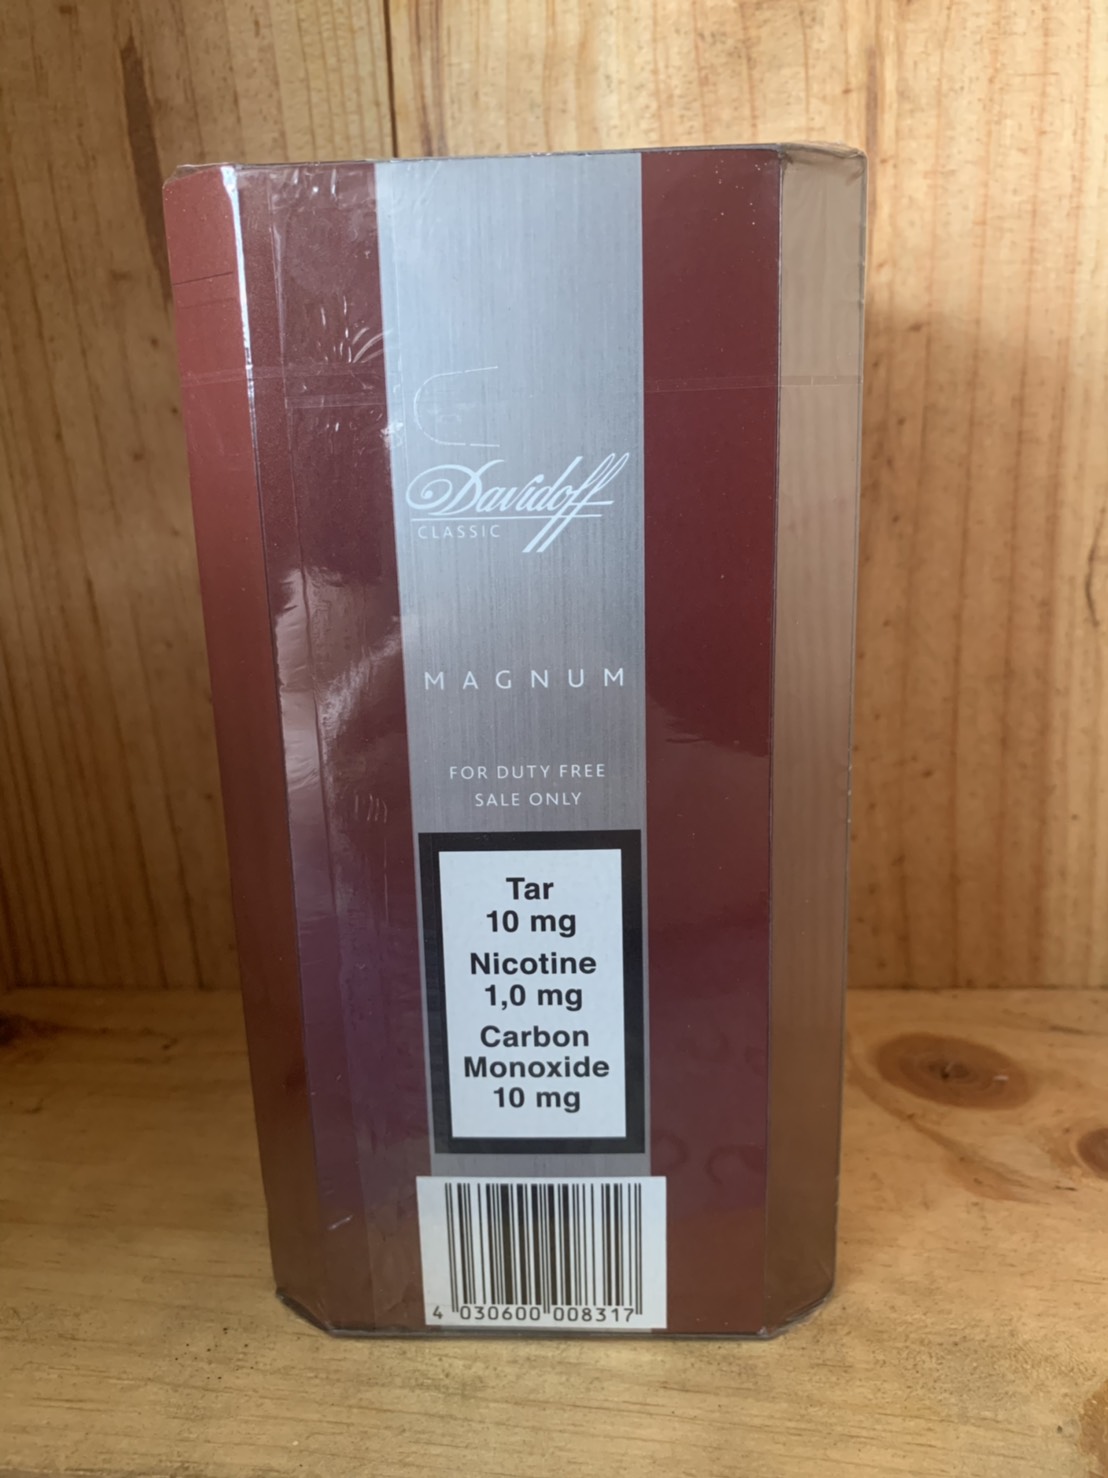 Davidoff Magnum Classic cigarettes 10 cartons - Click Image to Close